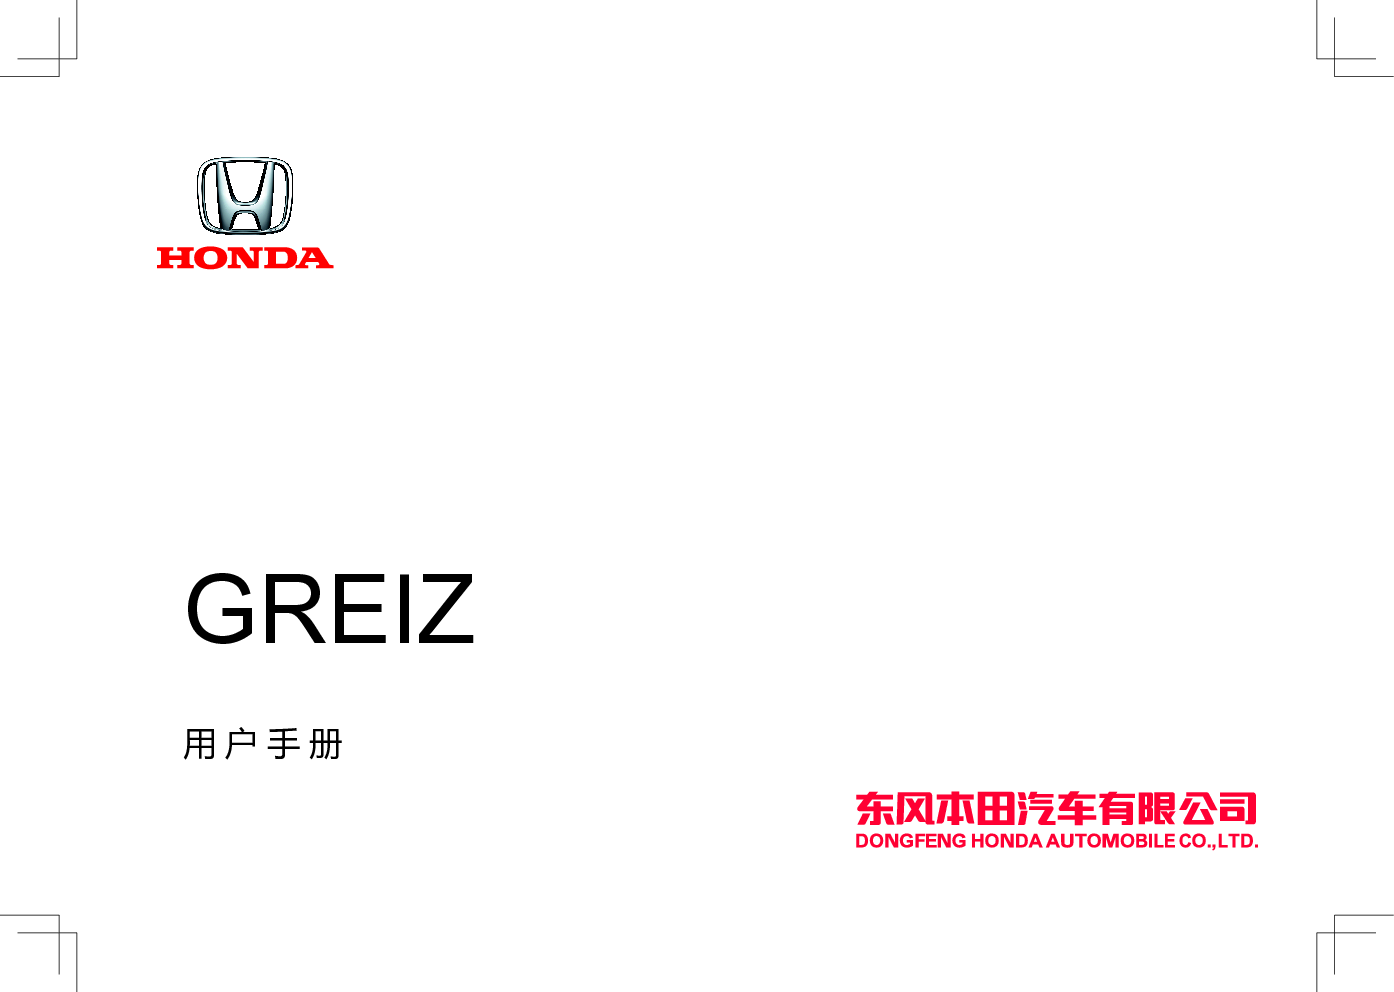 本田 Honda GREIZ 哥瑞 2019 用户手册 封面